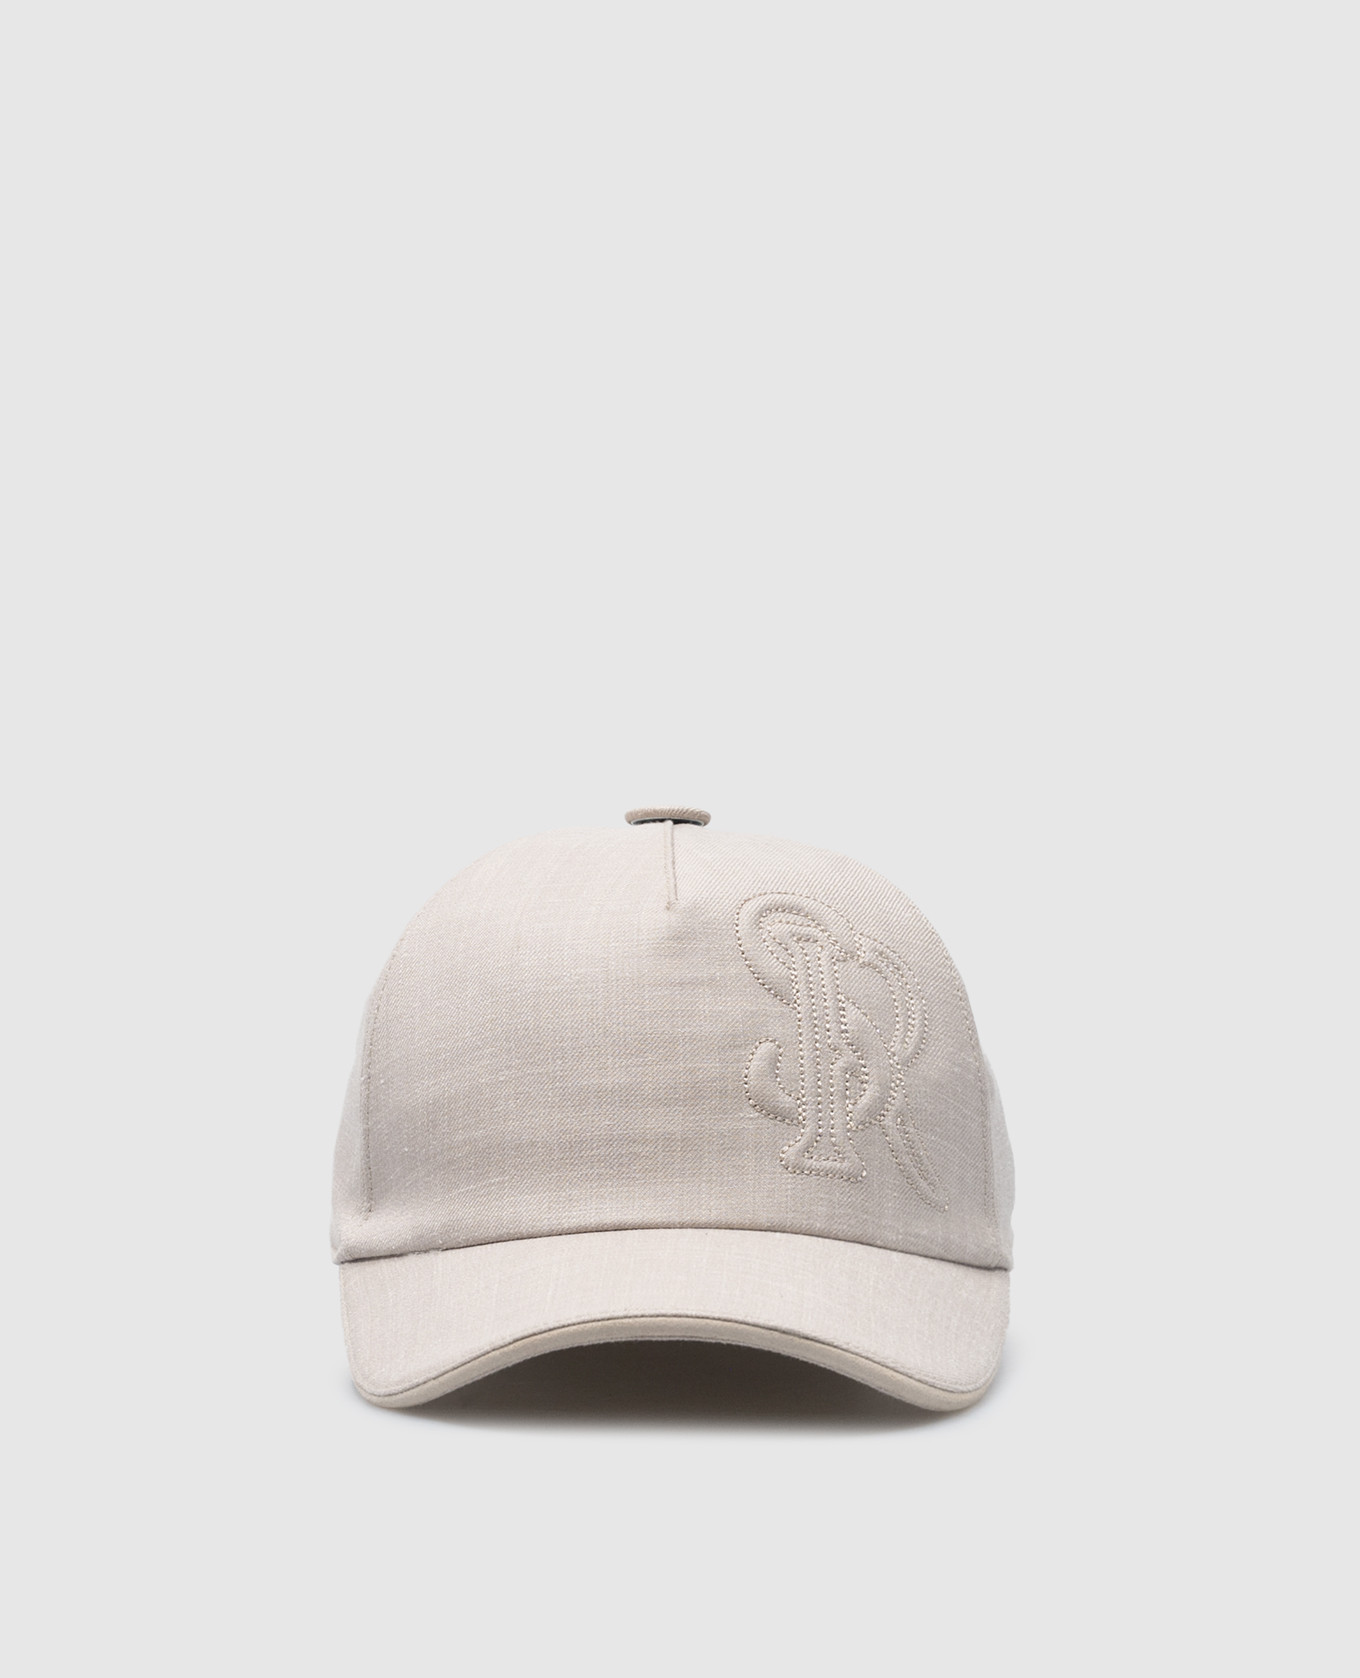 Бежевая кепка из шерсти, шелка и льна с вышивкой логотипа монограммы.